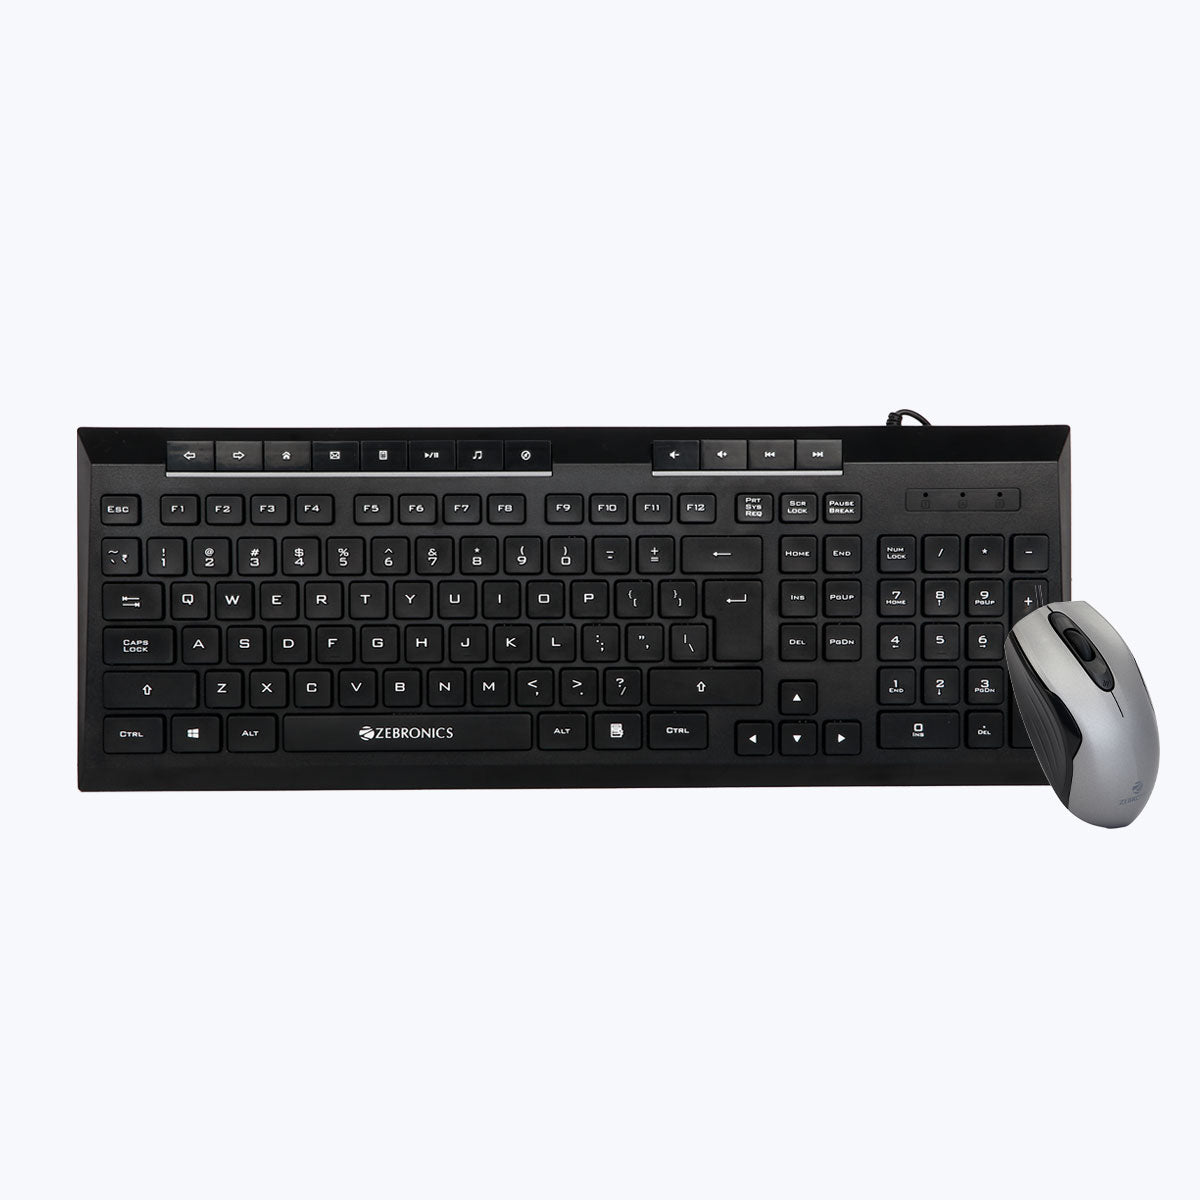 Zeb-Judwaa 900 - Keyboard and Mouse Combo - Zebronics